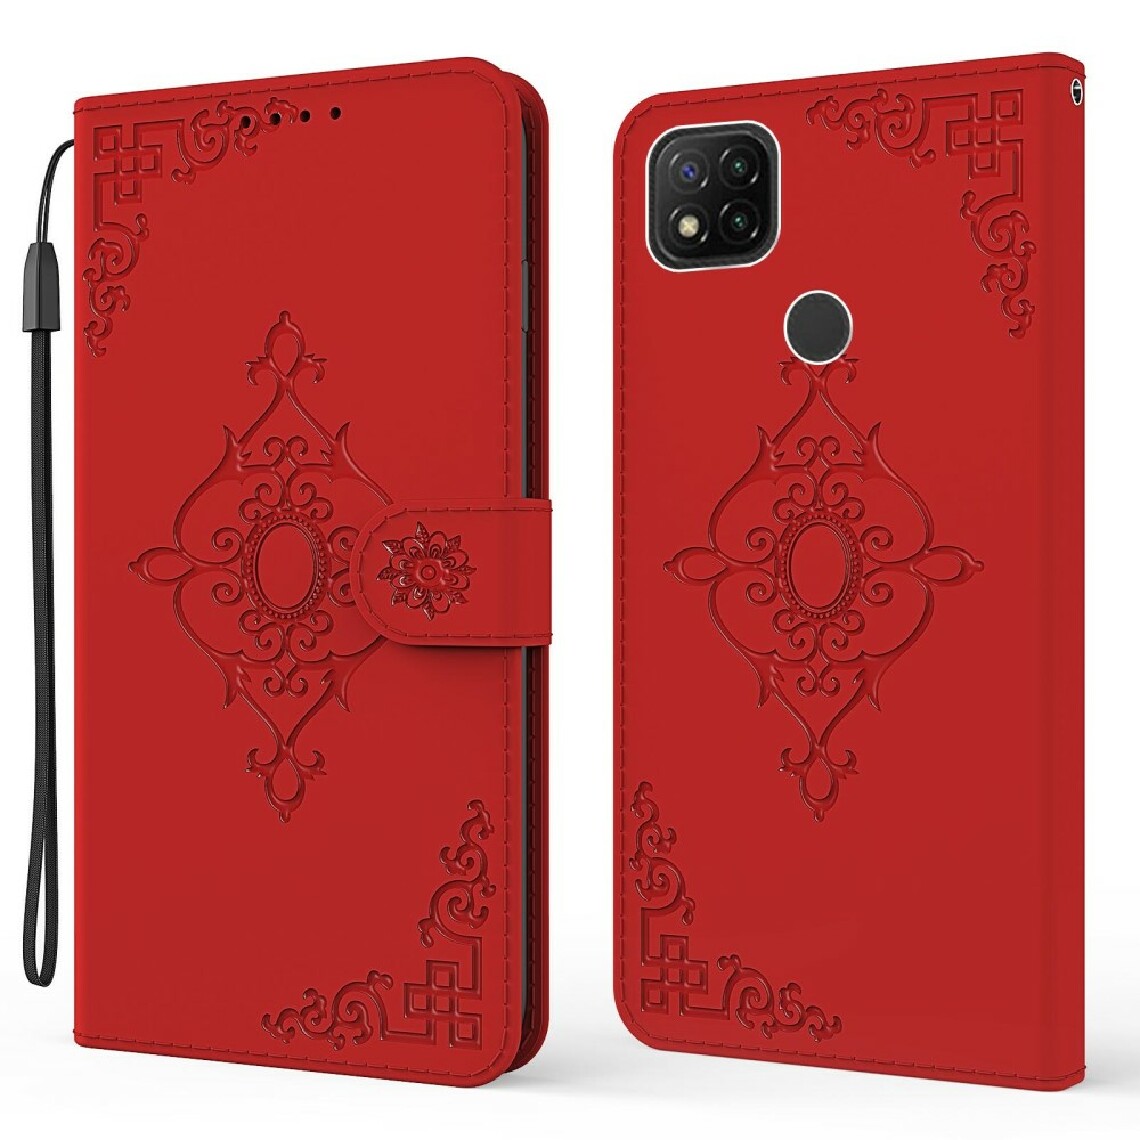 Other - Etui en PU impression de motif symétrique avec support et fermoir magnétique rouge pour votre Xiaomi Redmi 9C - Coque, étui smartphone